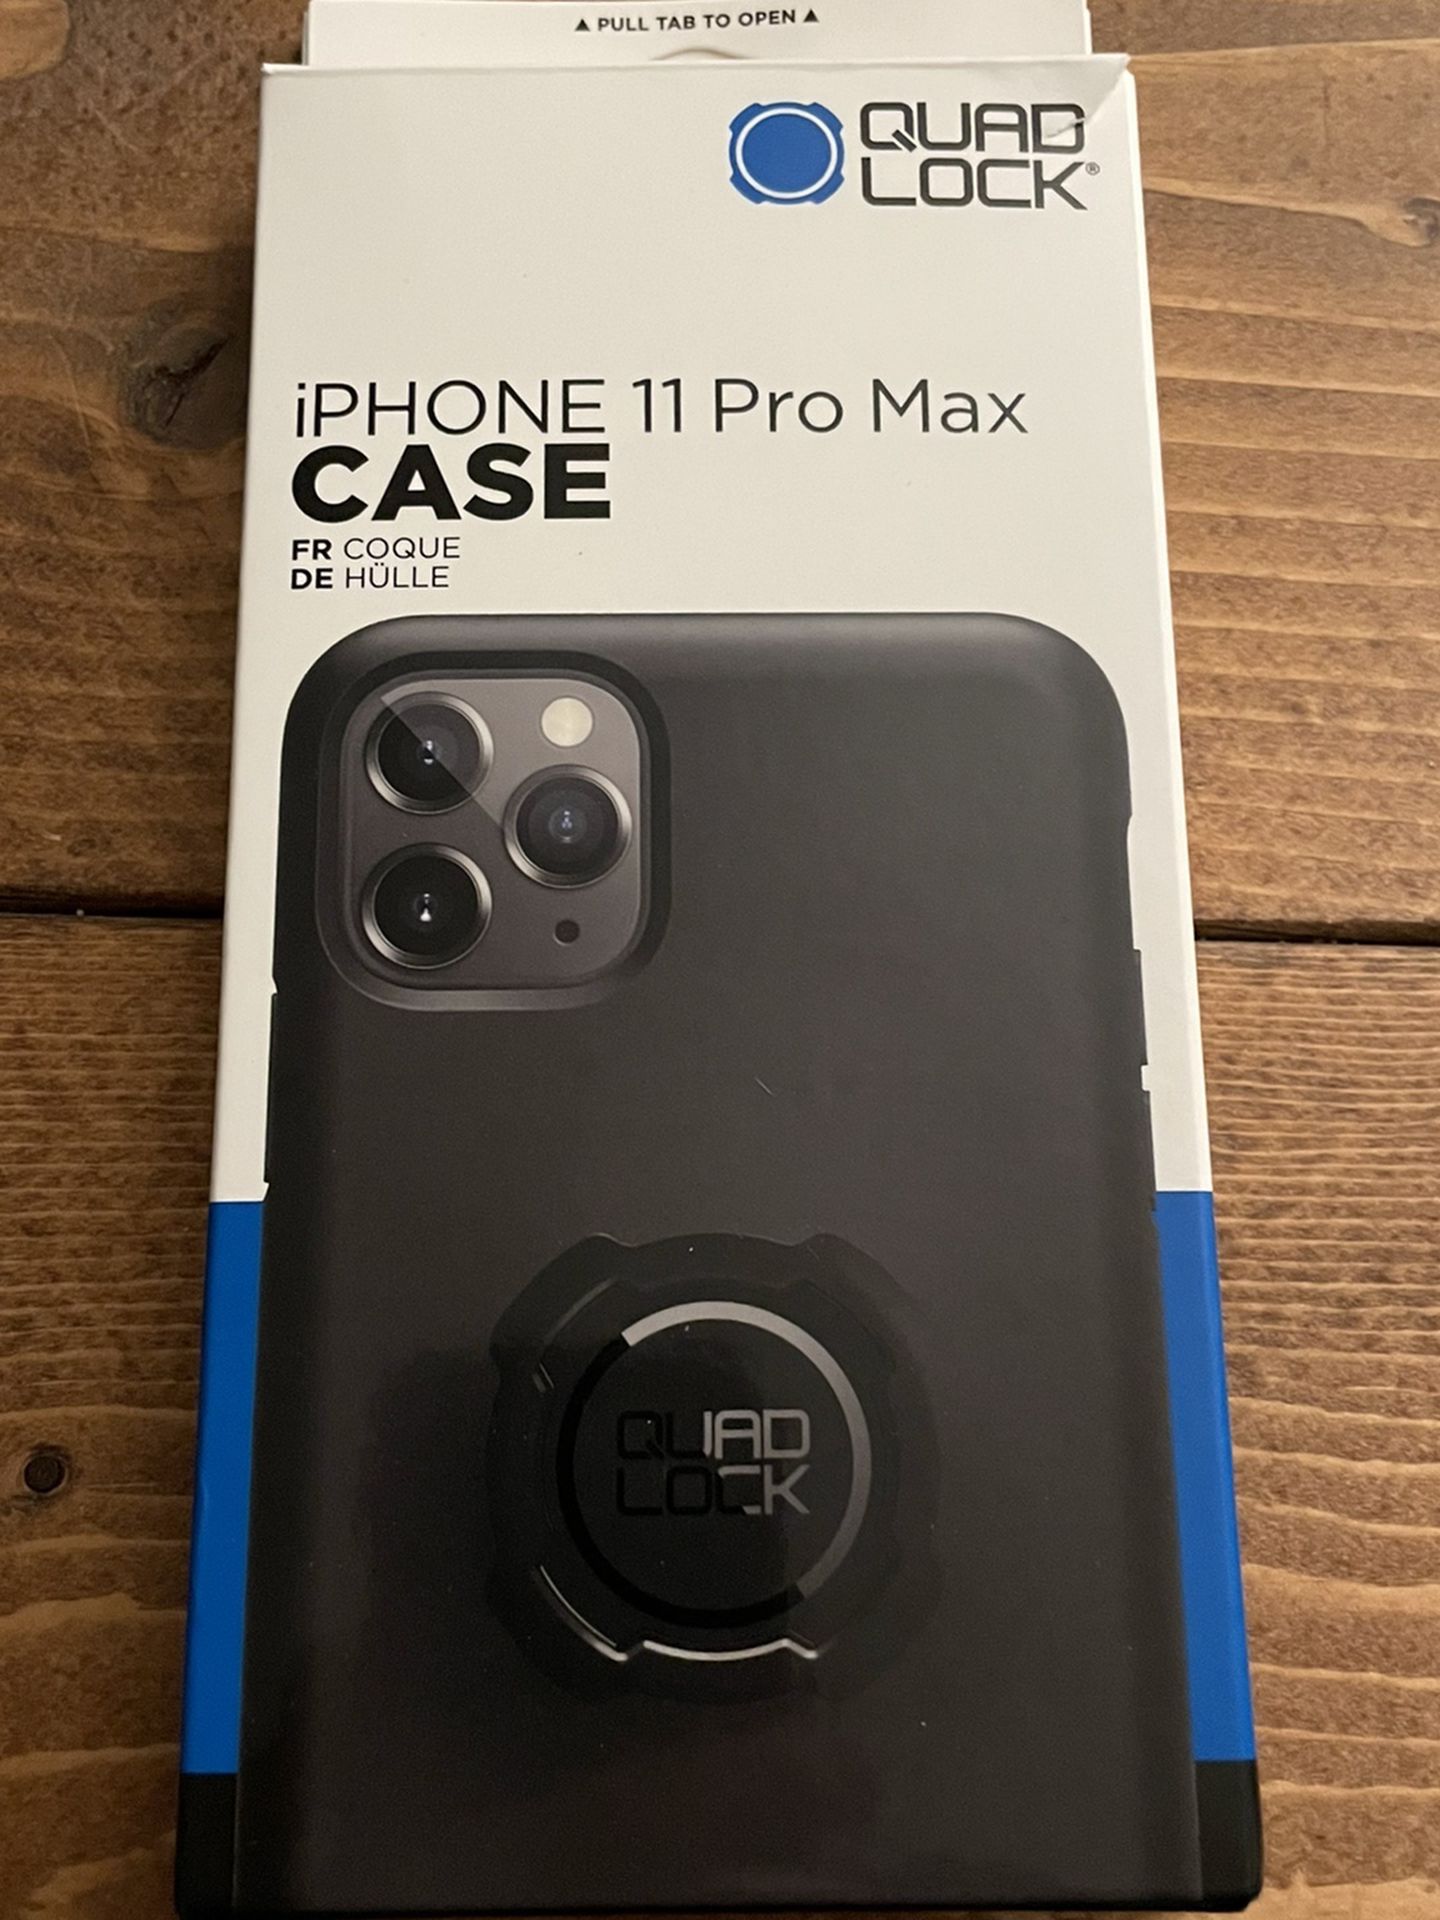 Quad Lock iPhone 11 Pro Max Case with Extra Case